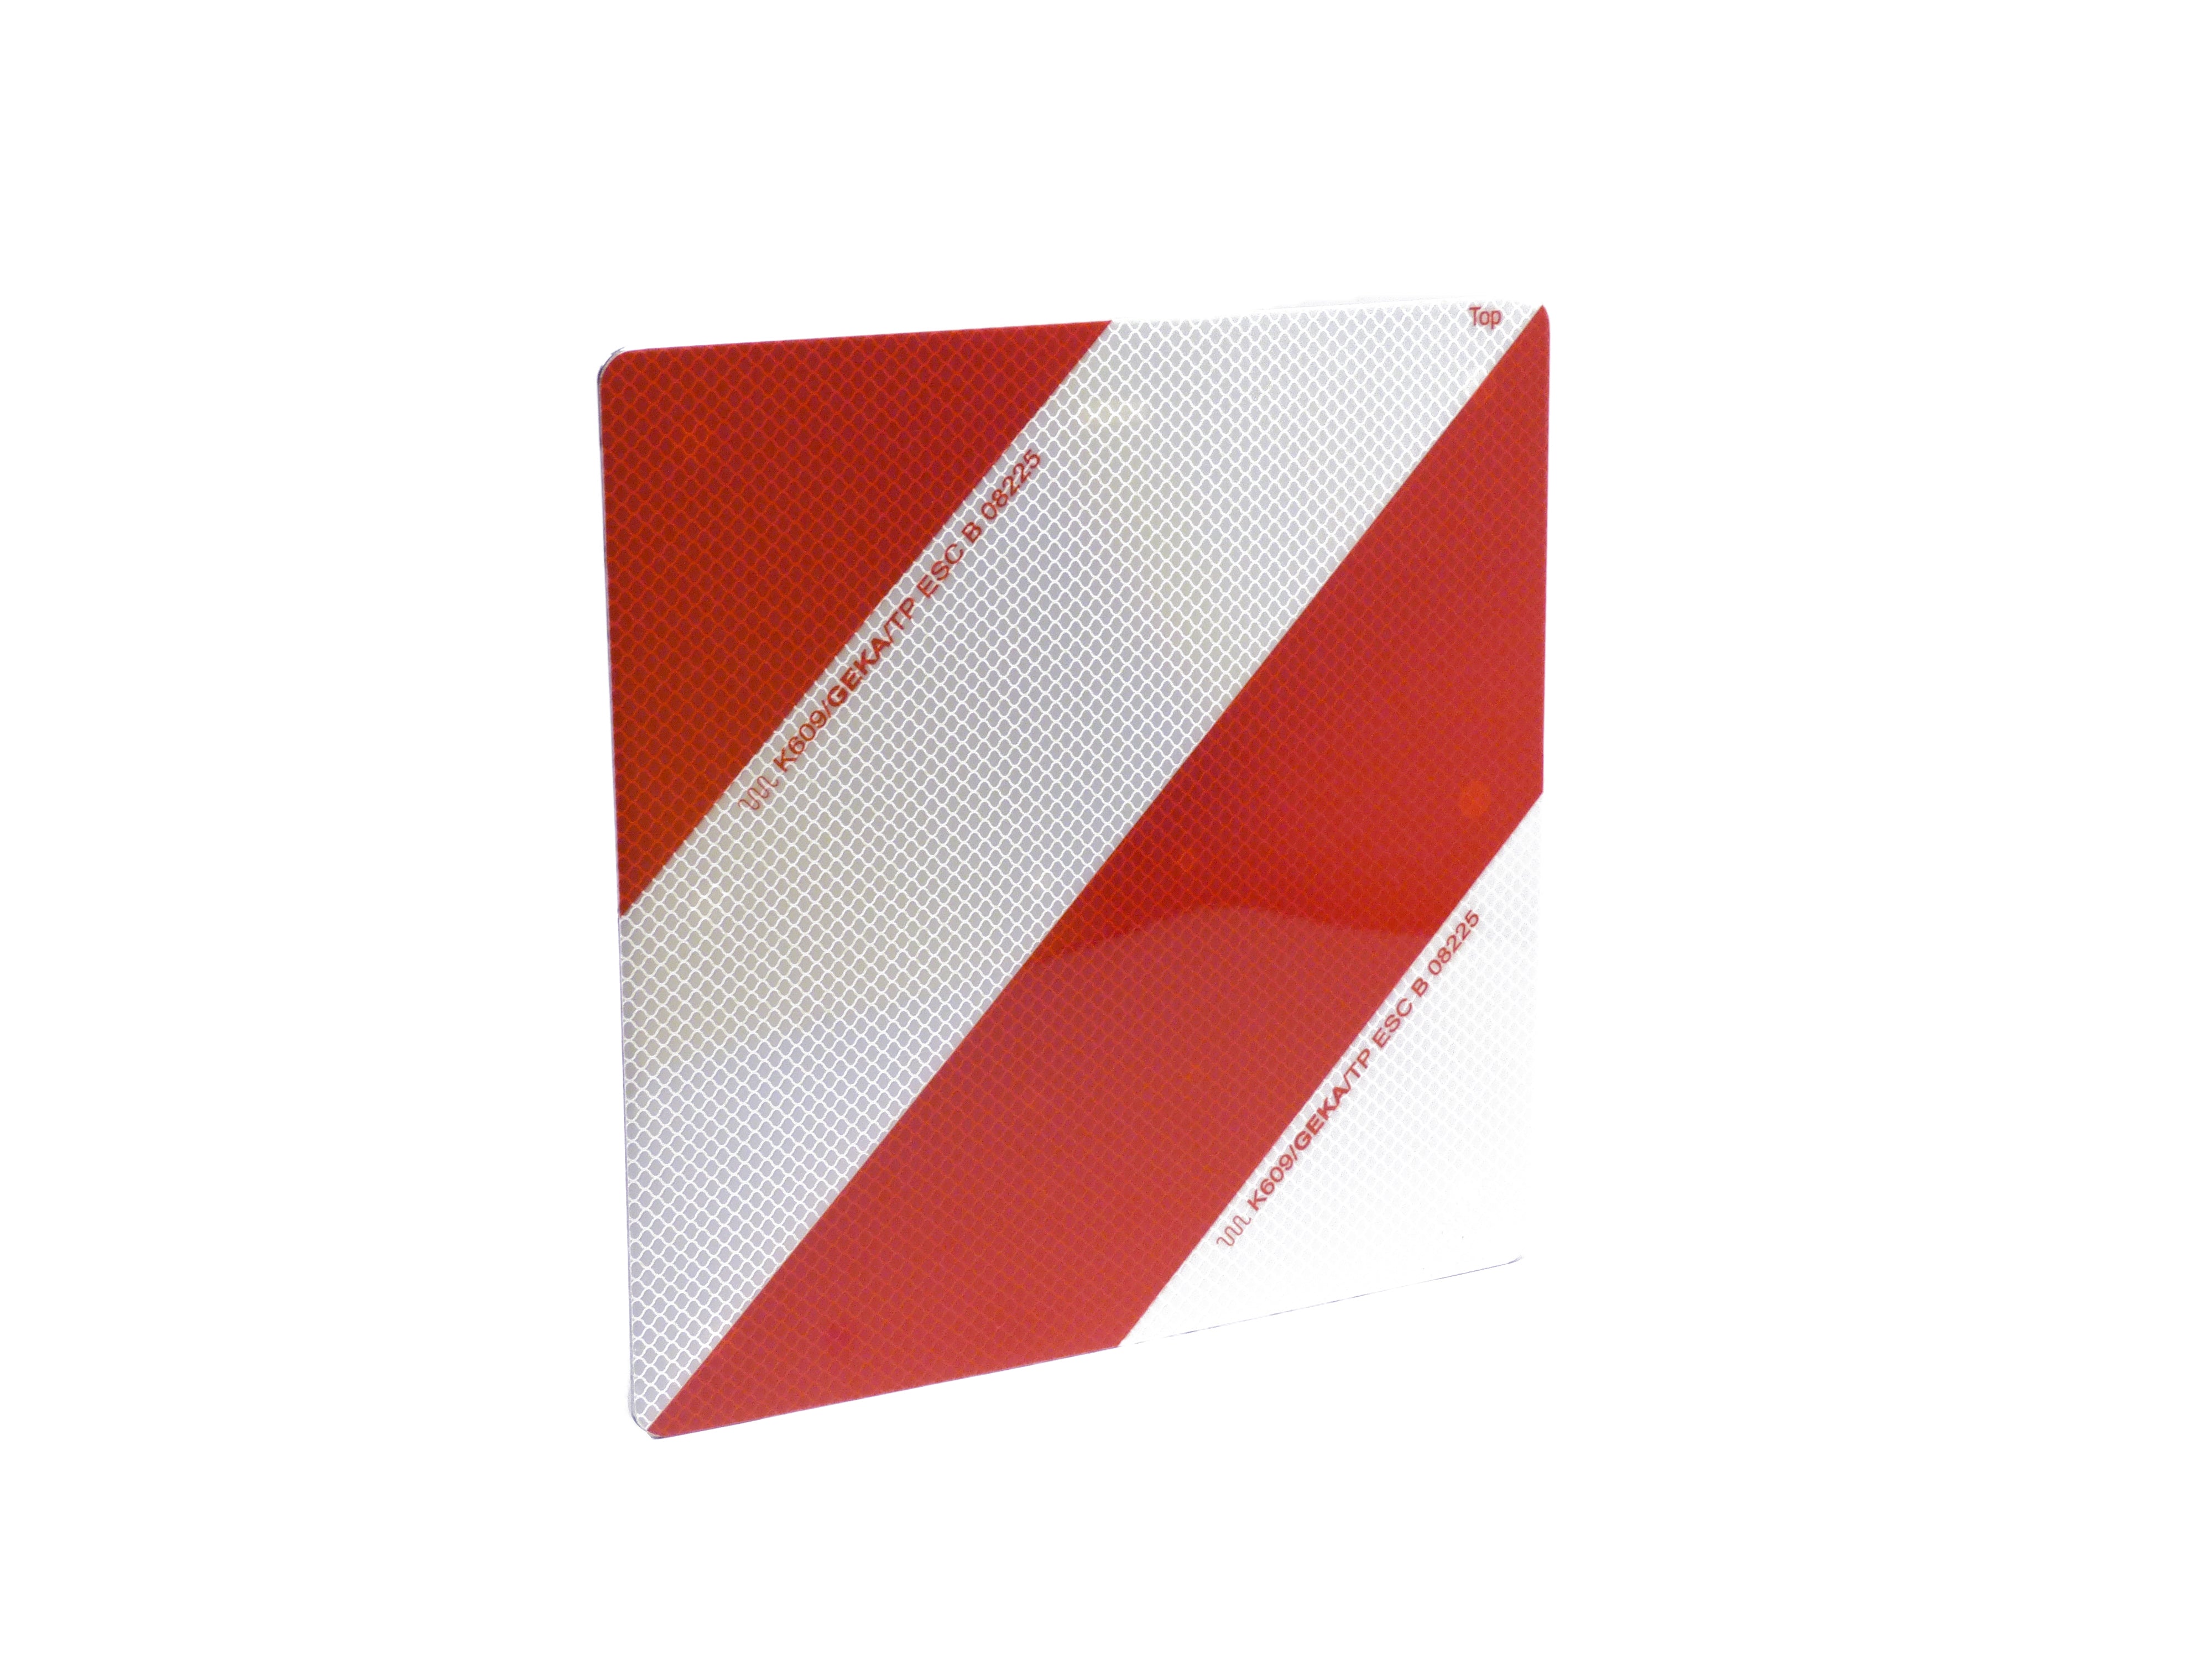 Warntafel linksweisend, für Land- und Forstwirtschaft, rot/weiß, 28,2 x  56,4 cm